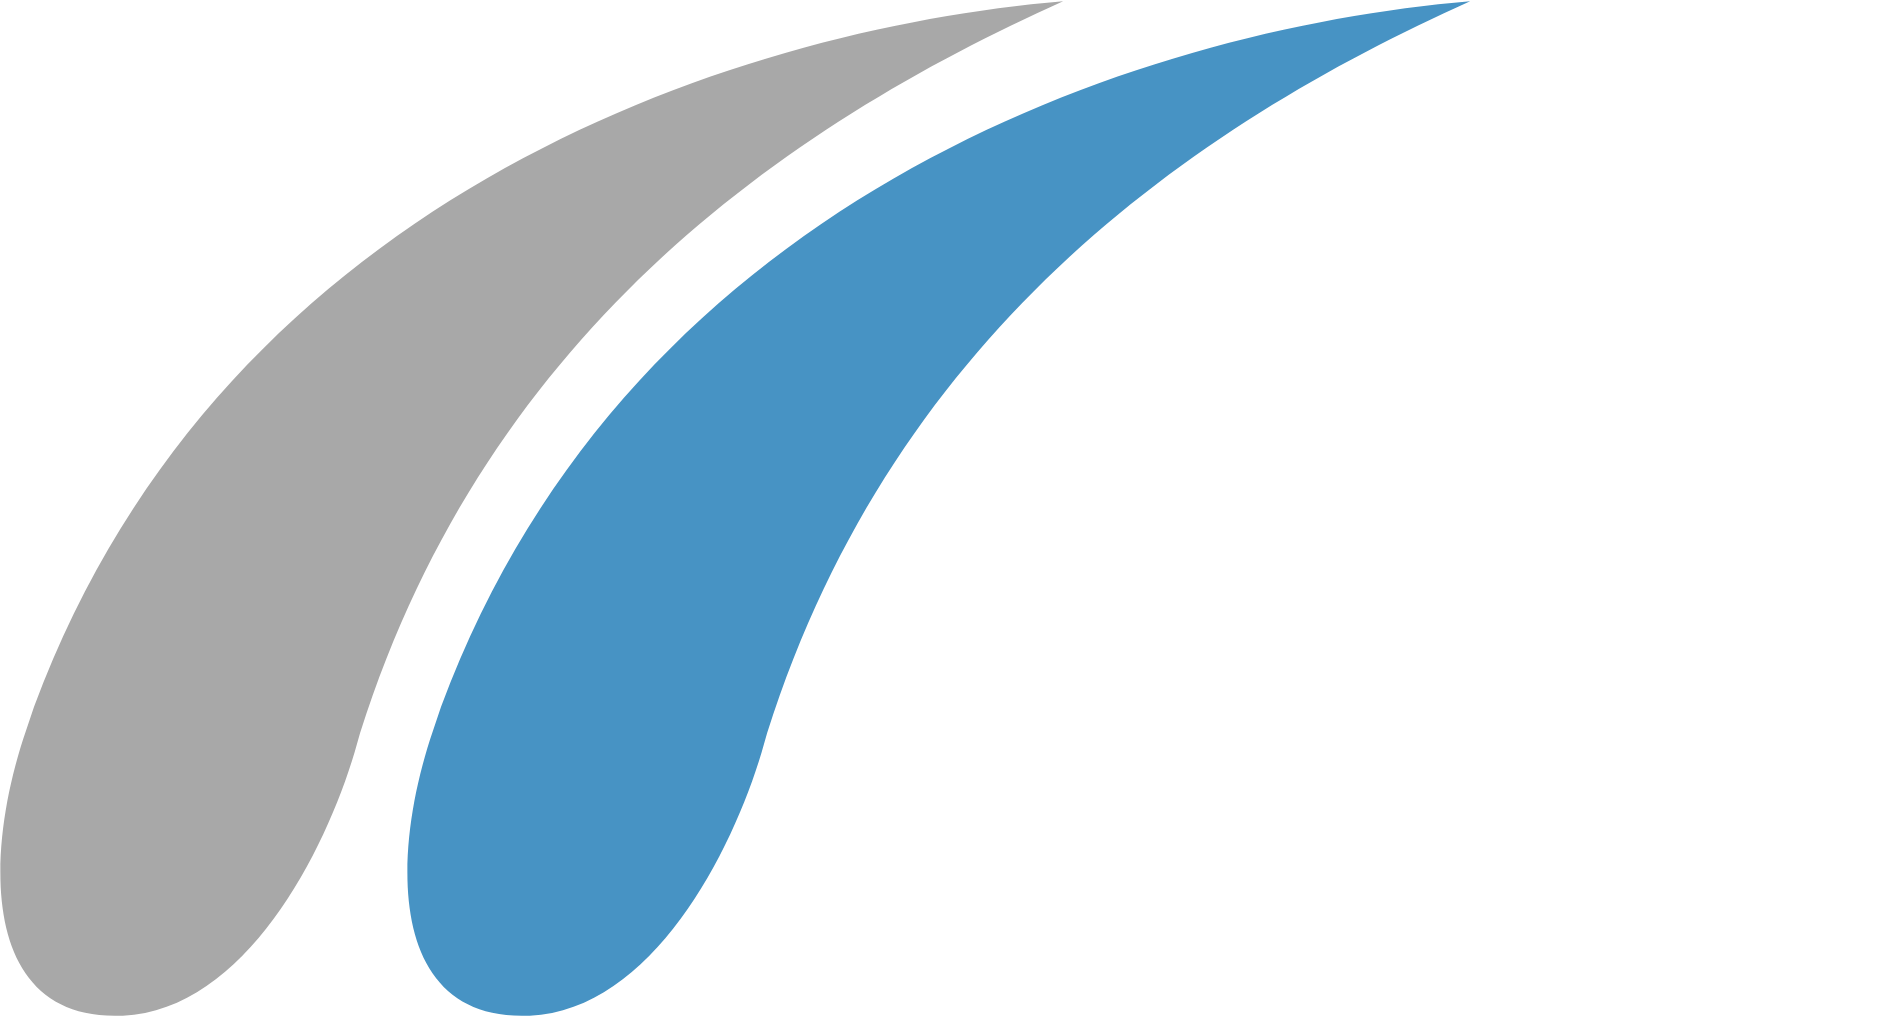 Mechel PAO logo pour fonds sombres (PNG transparent)